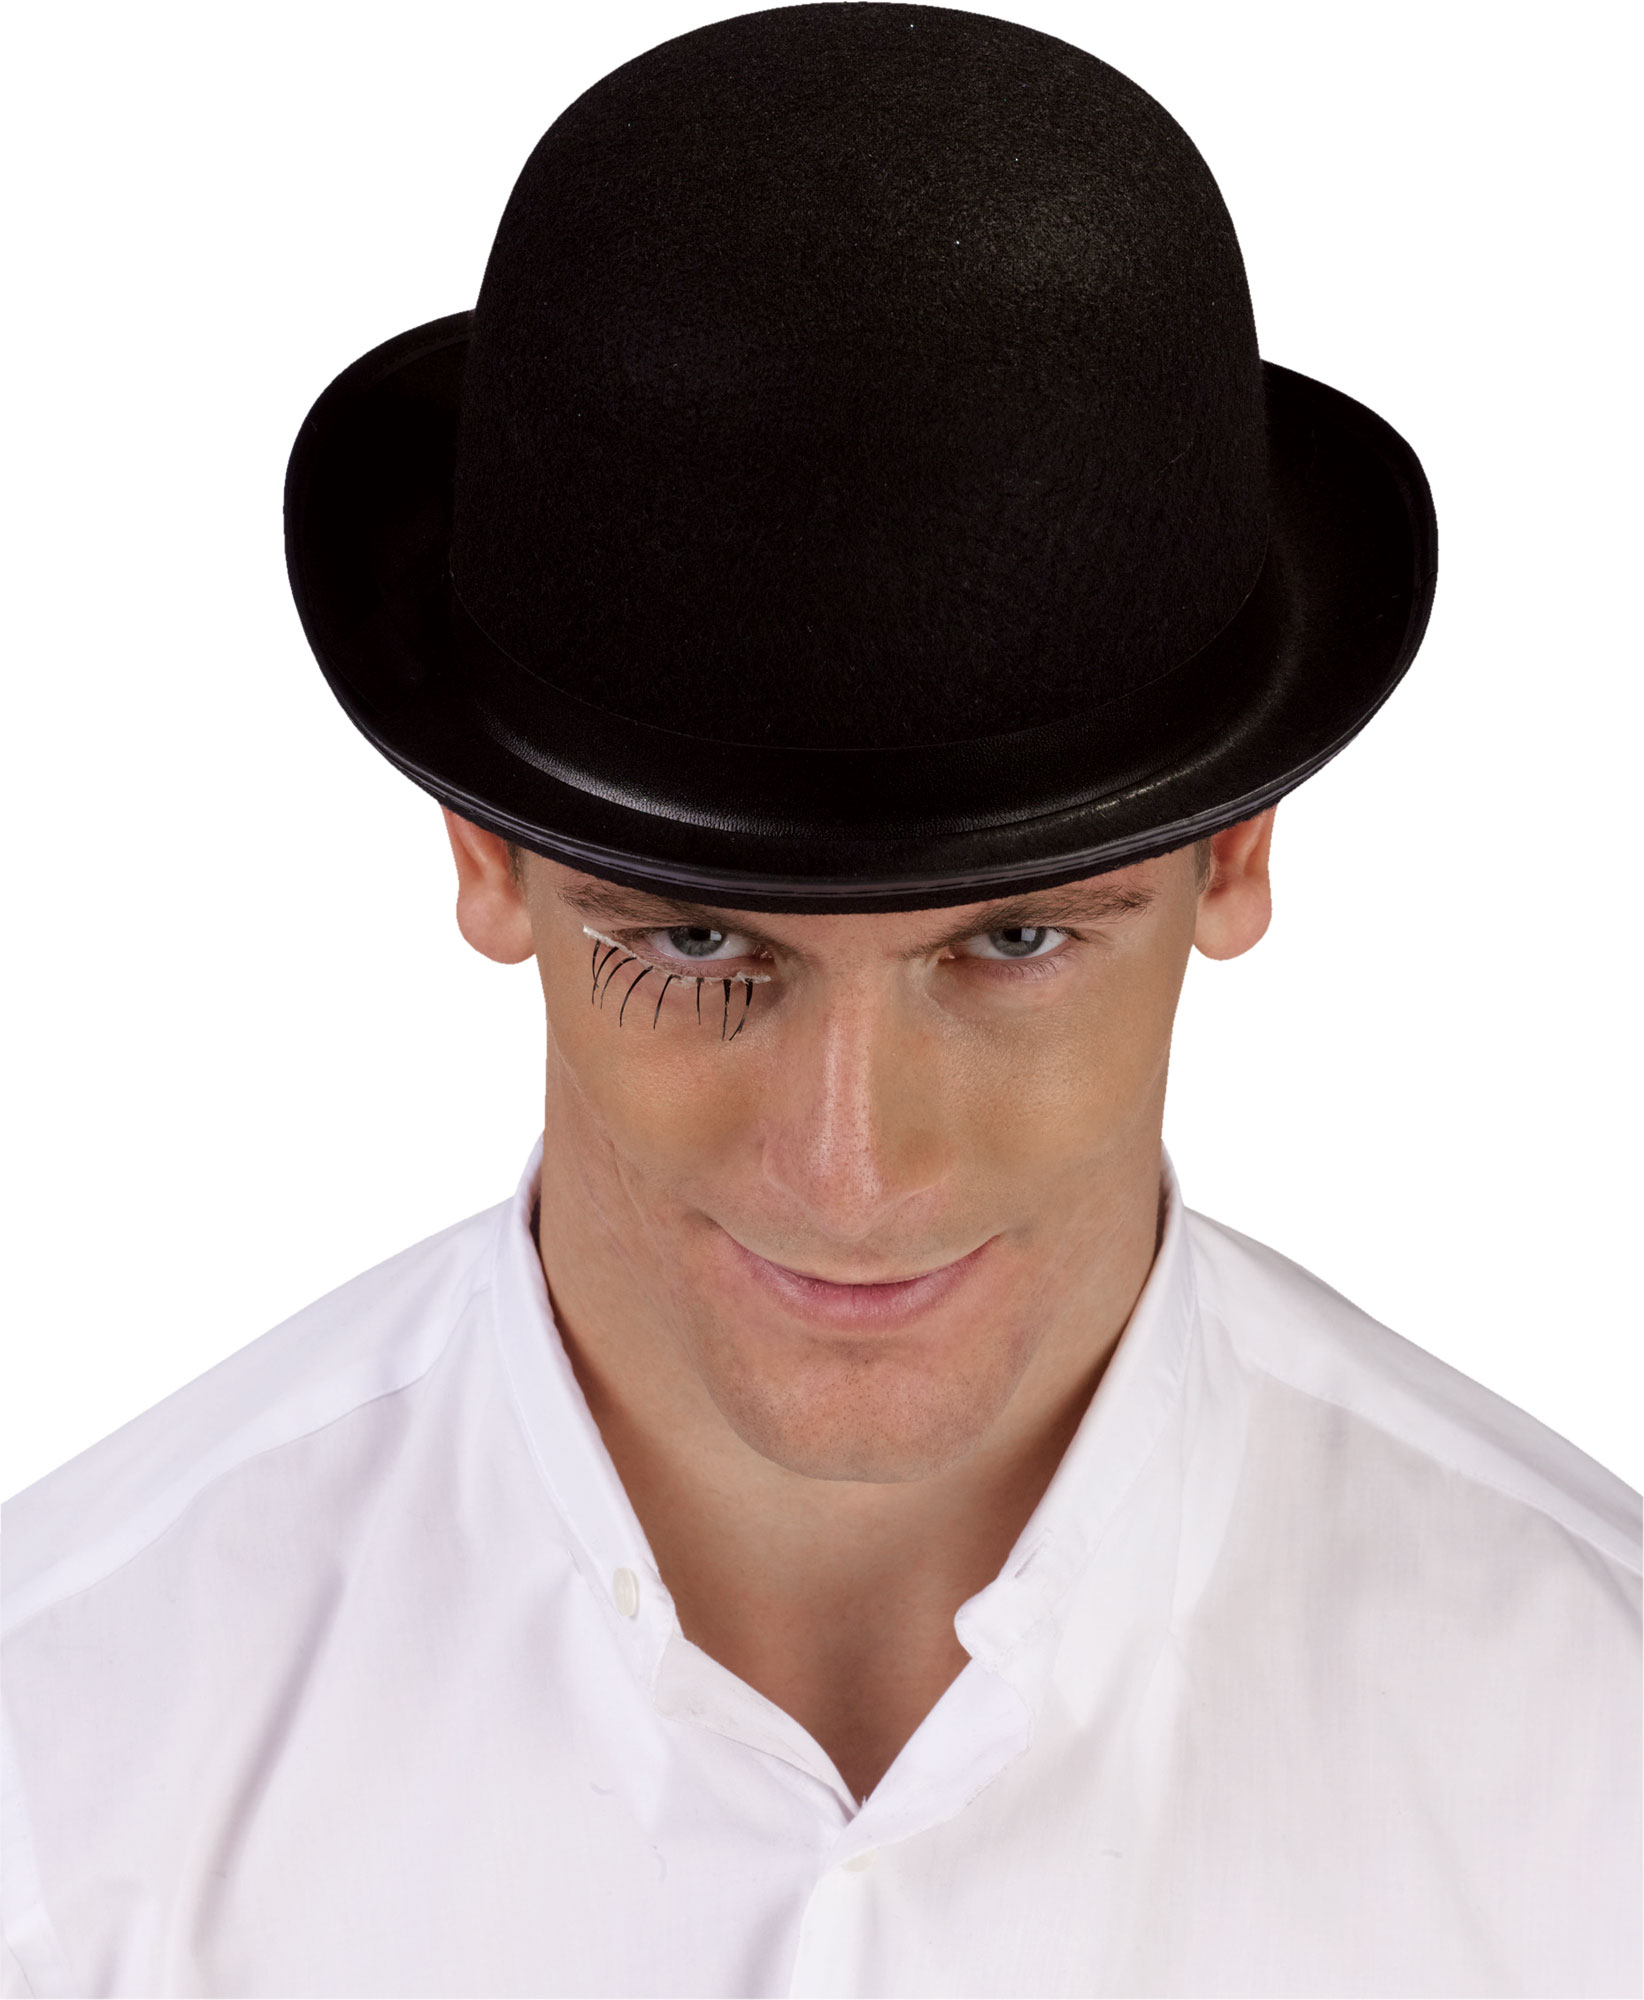 Шляпа мужская. Головной убор шляпа мужская. Мужчина в шляпе. Модные мужские шляпы. Мужчины со шляпой